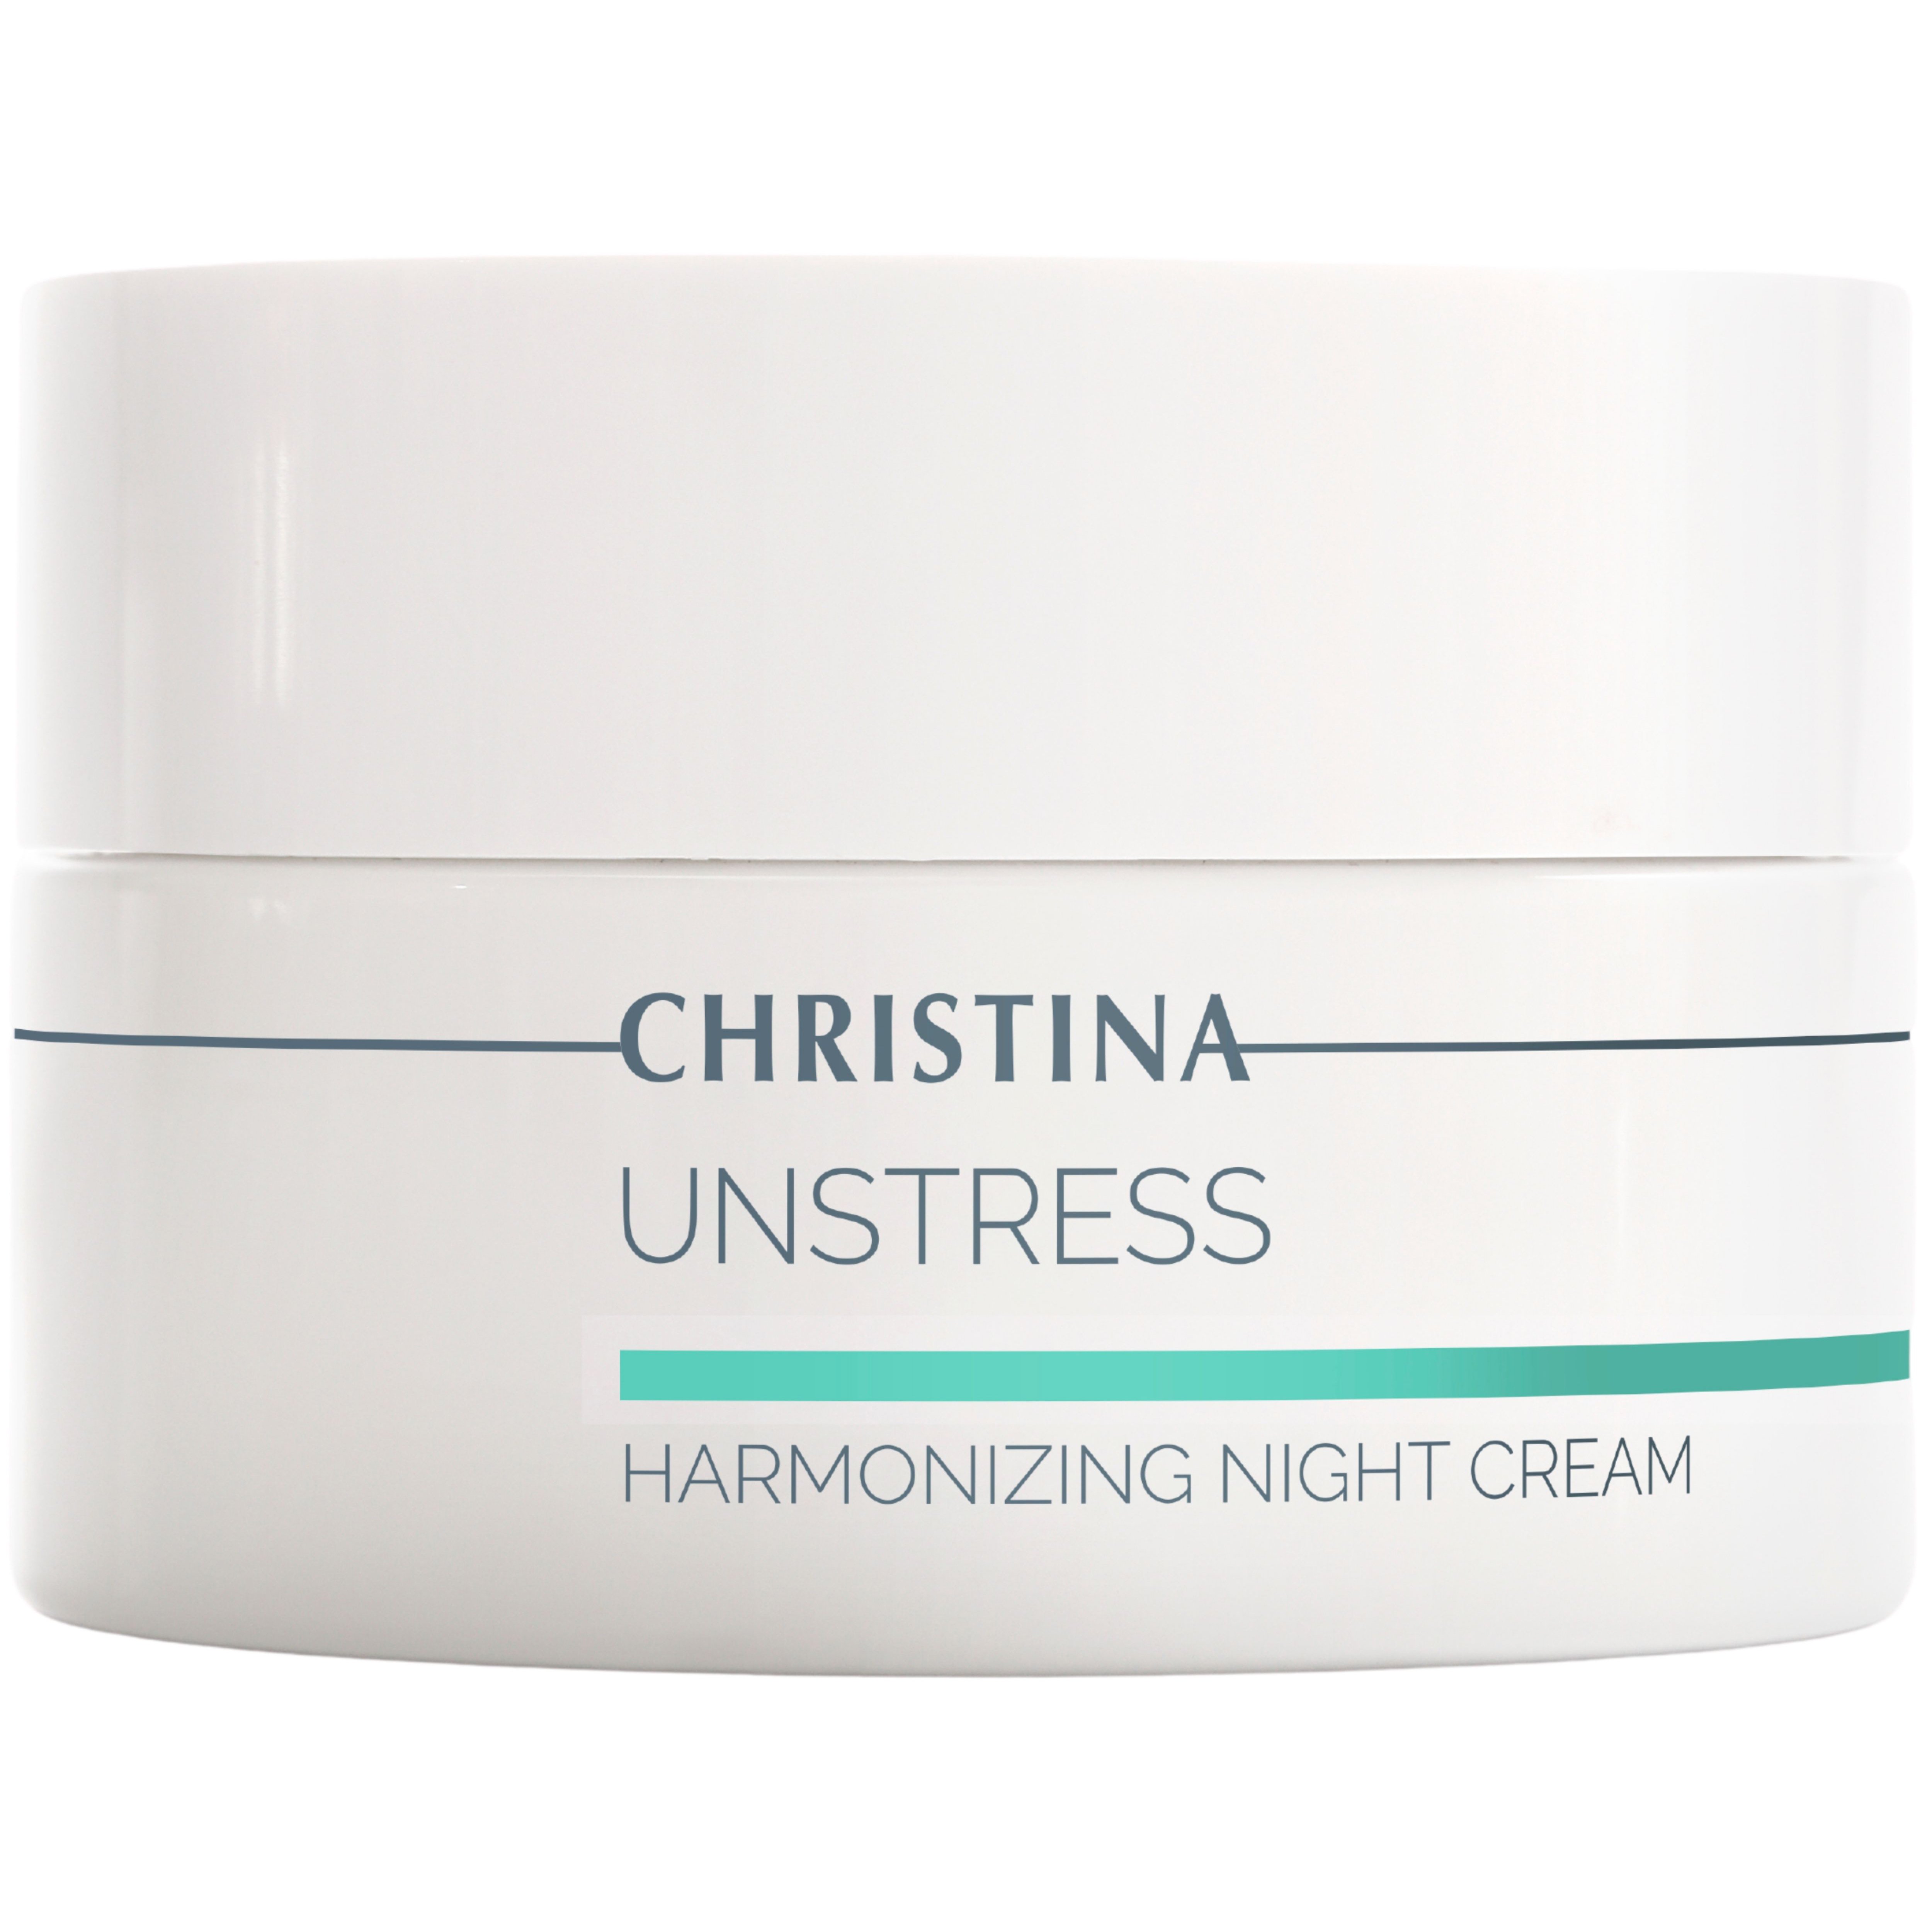 Гармонизирующий ночной крем для лица Christina Unstress Harmonizing Night Cream 50 мл - фото 1